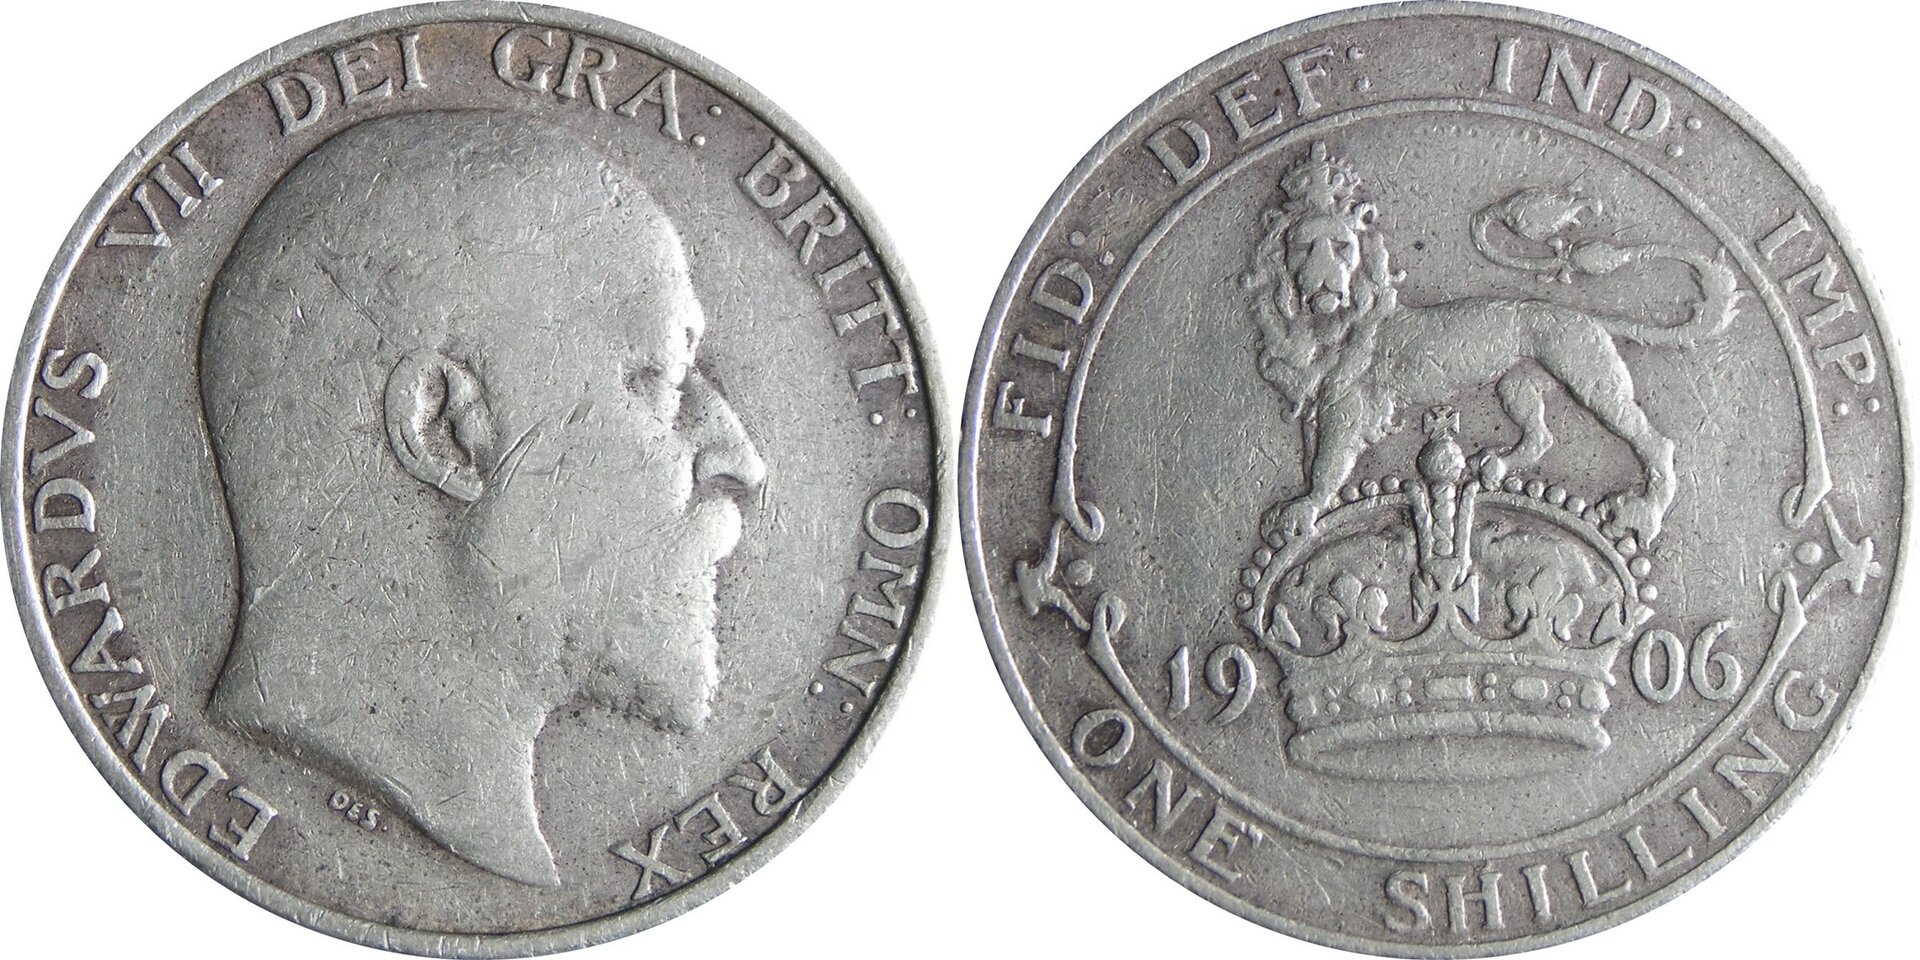 1906 GB shilling.jpg